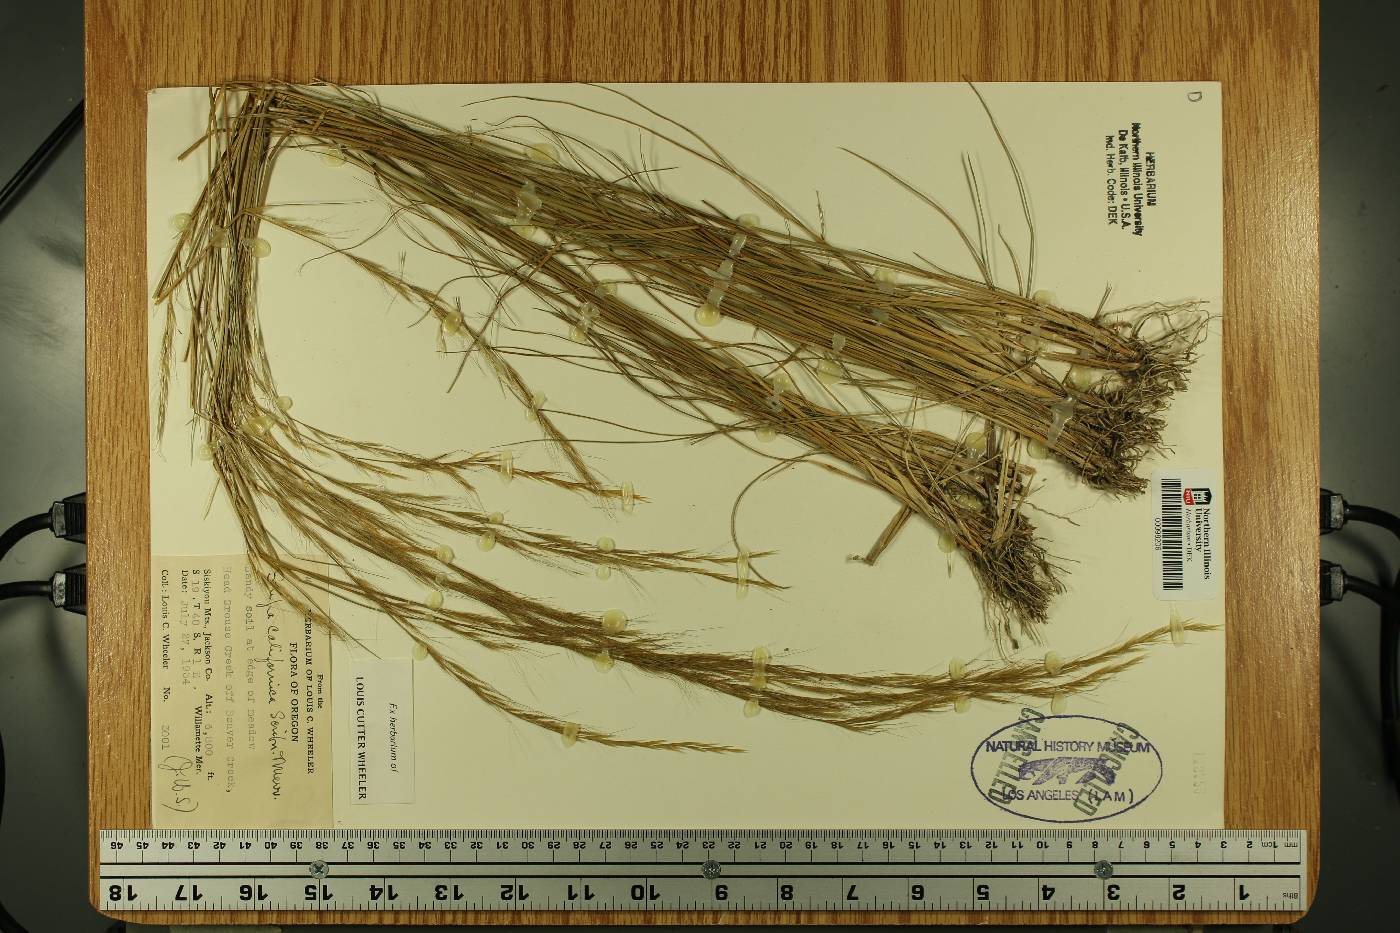 Eriocoma occidentalis subsp. californica image